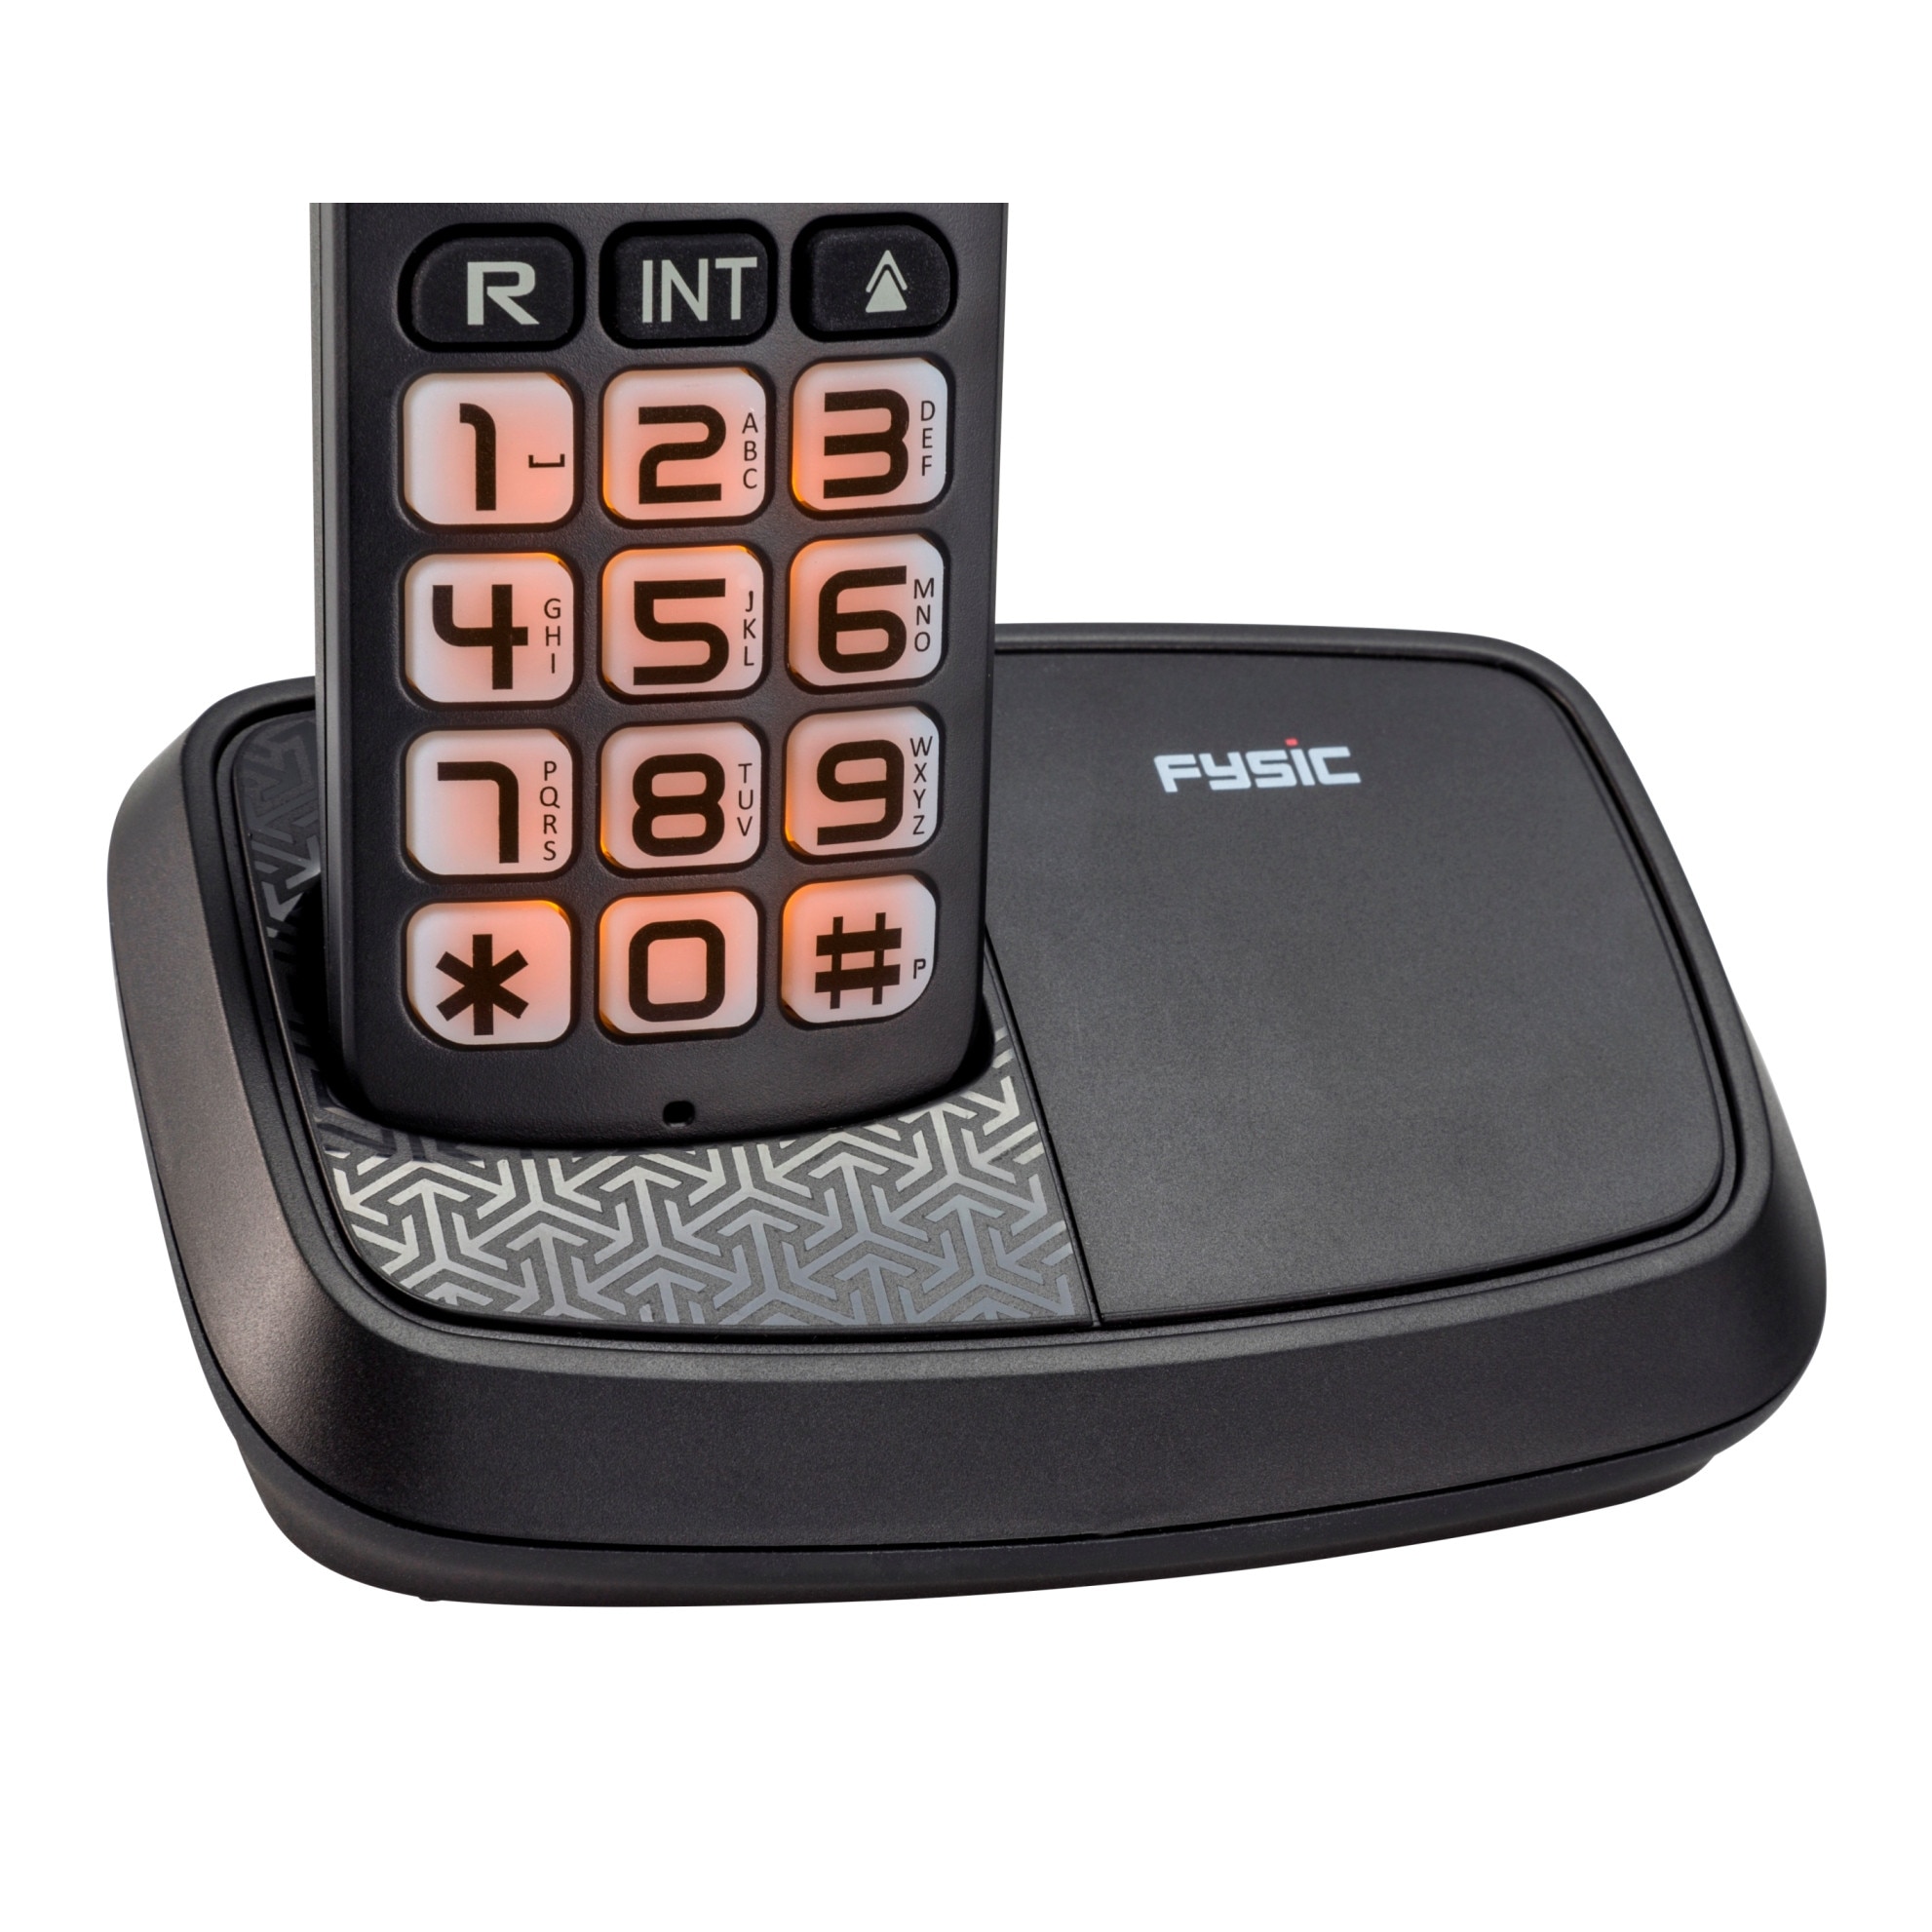 Fysic DECT Combo. Телефон стационарный беспроводной. Телефон Fysic. Fysic FX-8025. Телефон стационарный беспроводной домашний